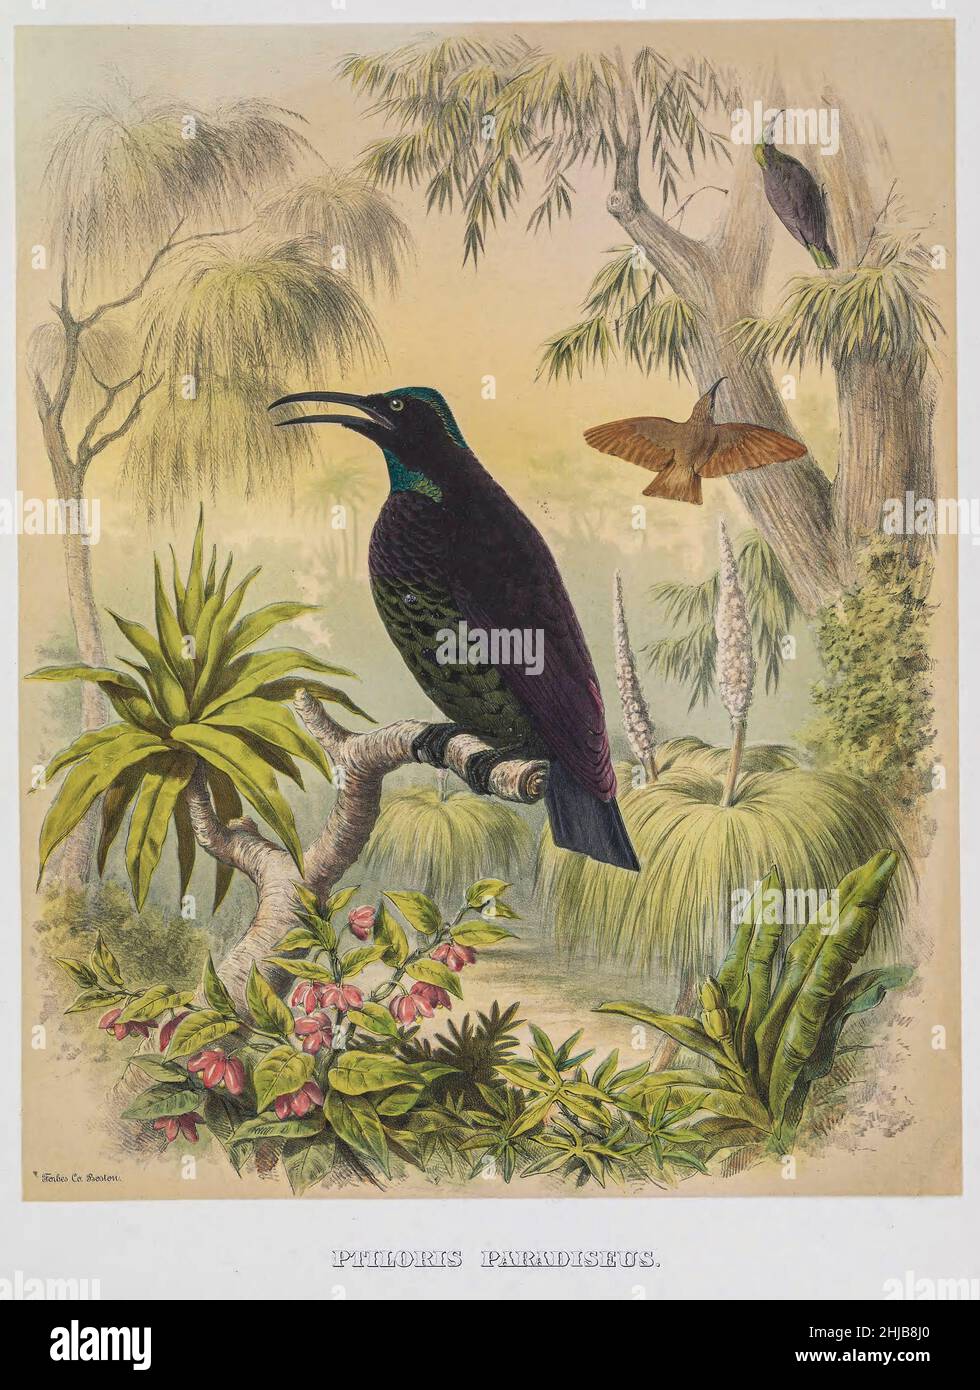 Der Paradiesflügelvögel (Lophorina paradisea) ist ein Singvögel der Familie Paradisaeidae. Früher gehörte sie der Gattung Ptiloris an und wurde seitdem neben anderen Flöhe-Arten in die Gattung Lophorina verlegt. Sie kommt in subtropischen, gemäßigten Regenwäldern in Ostaustralien vor. Die Art ist sexuell dimorph; Das Männchen ist schwarz mit irisierenden blau-grünen Flecken, während das Weibchen grau-braun und weiß ist. Getönte Lithographie illustriert von Joseph Smit, aus dem Buch "die schönen und neugierigen Vögel der Welt" von Charles Barney Cory, Veröffentlicht vom Autor für die Abonnenten Bos Stockfoto